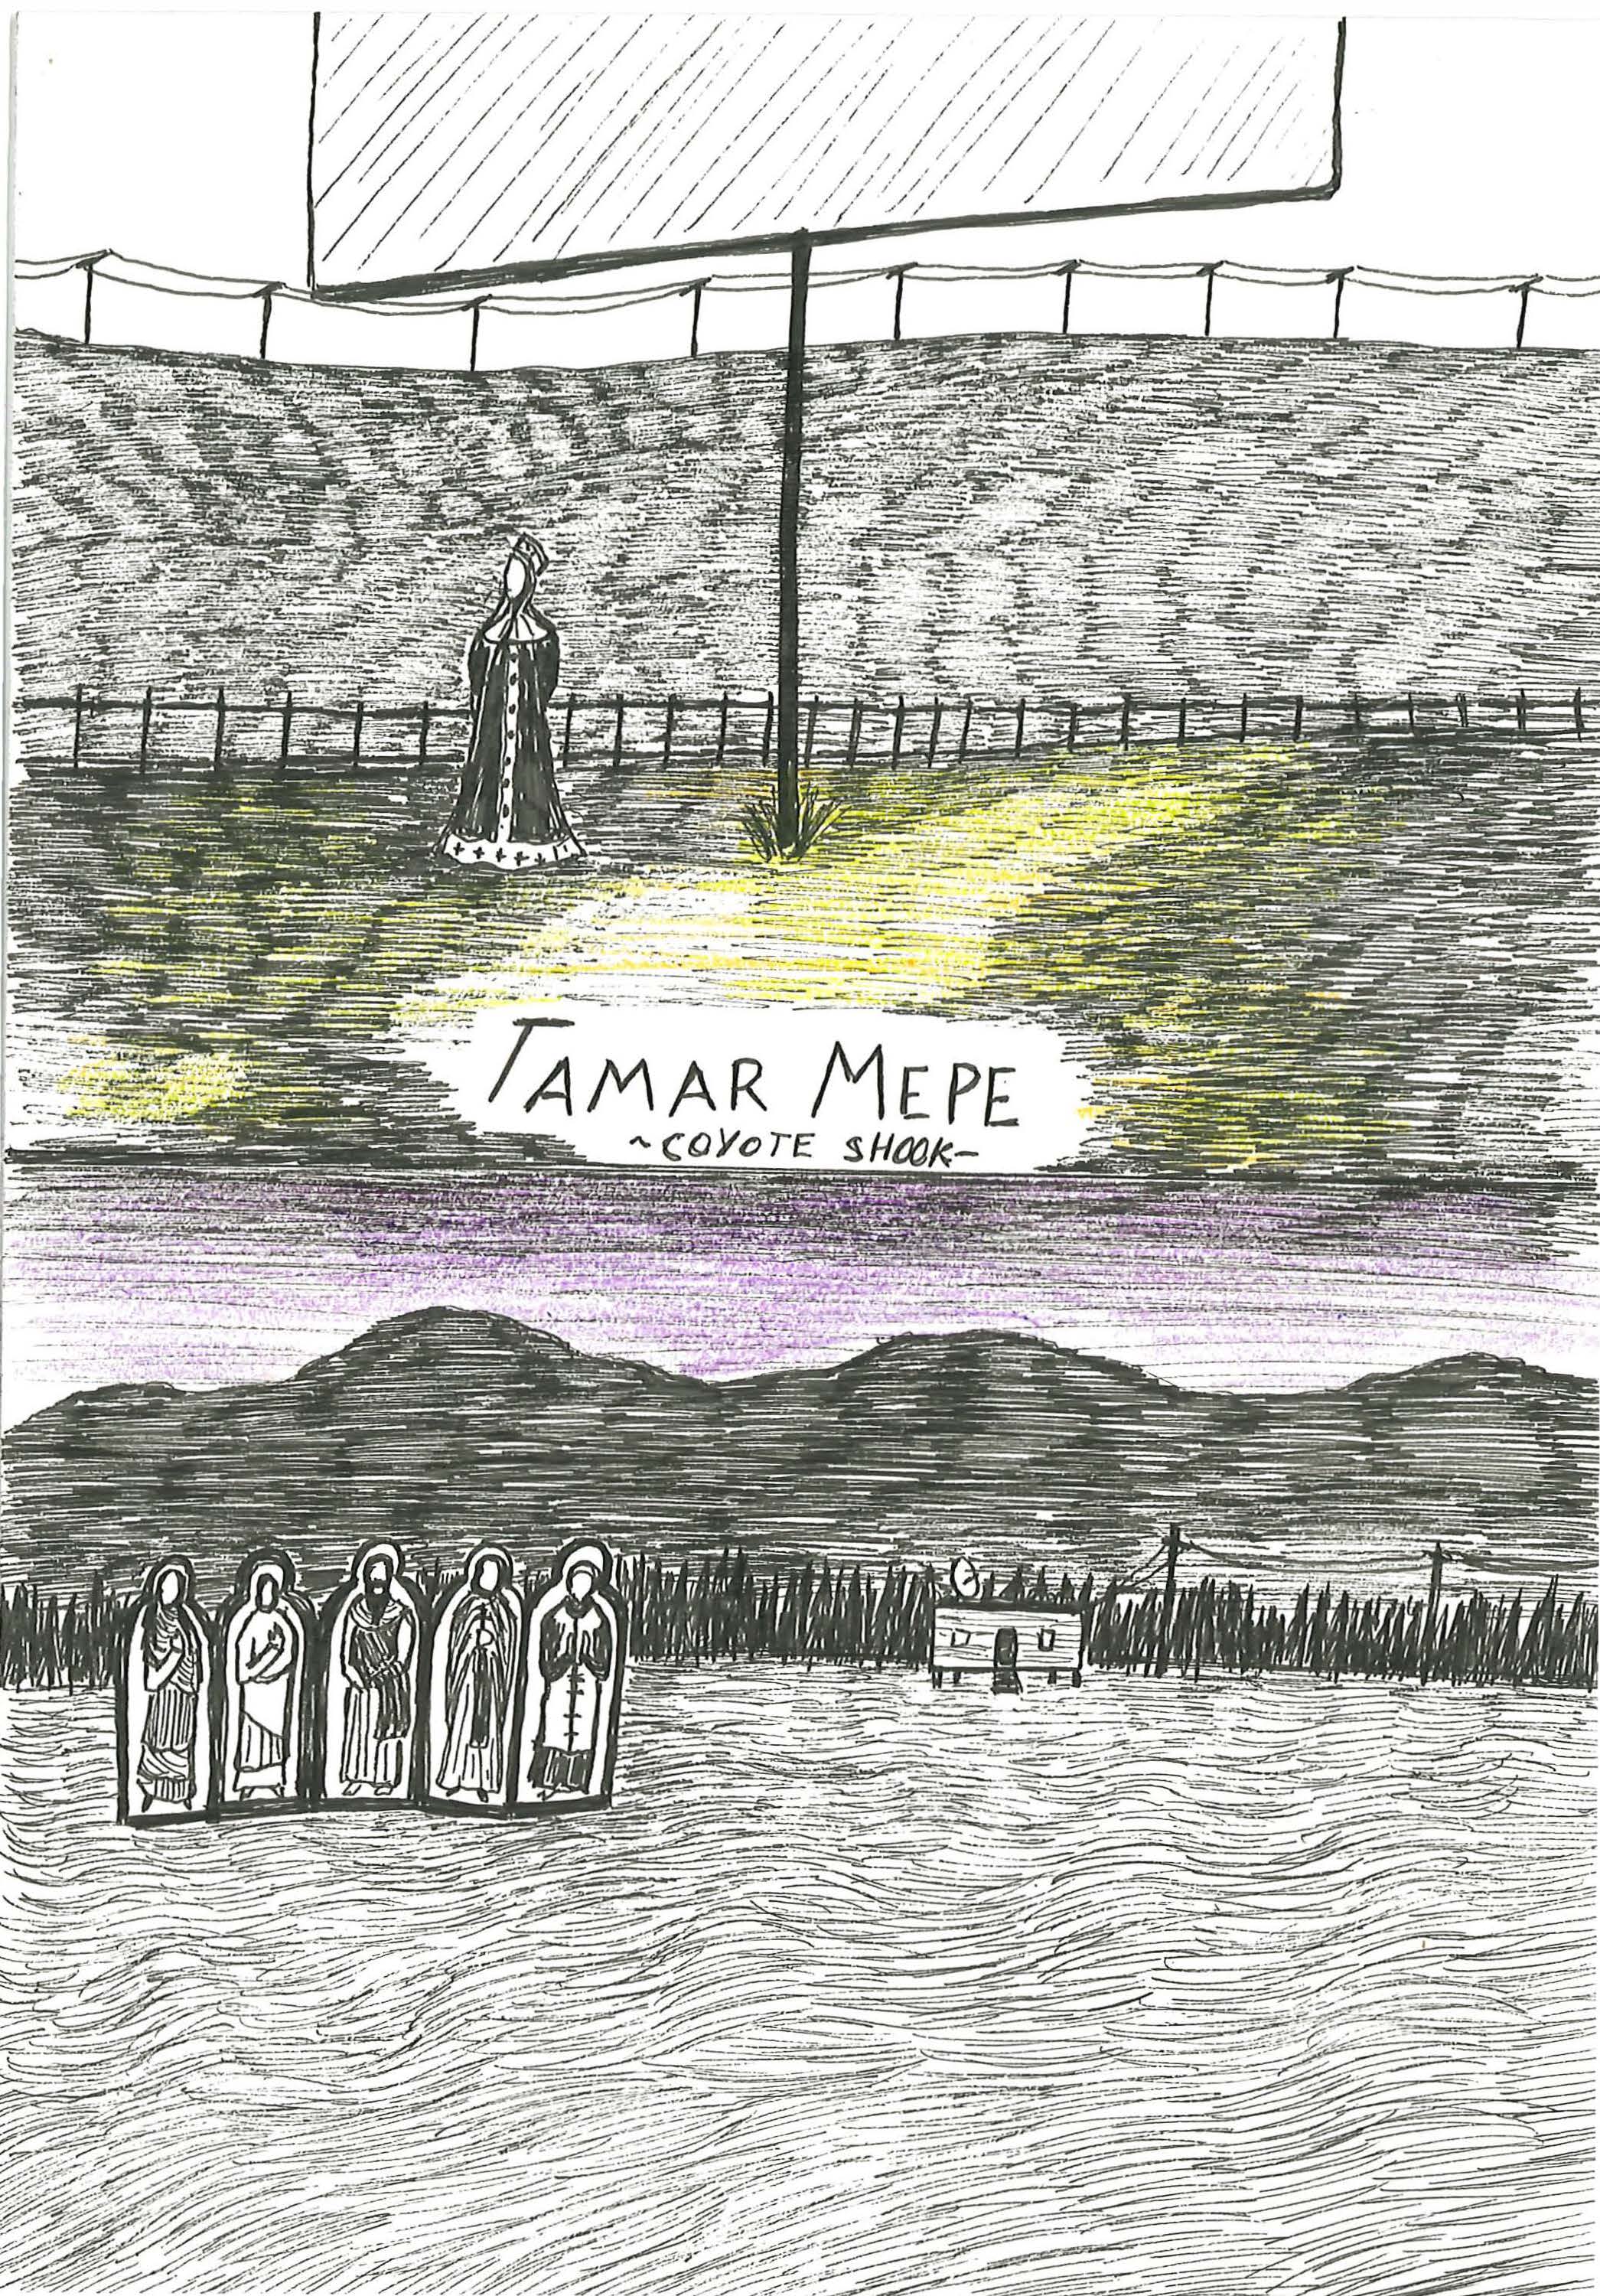 Tamar Mepe by Coyote Shook